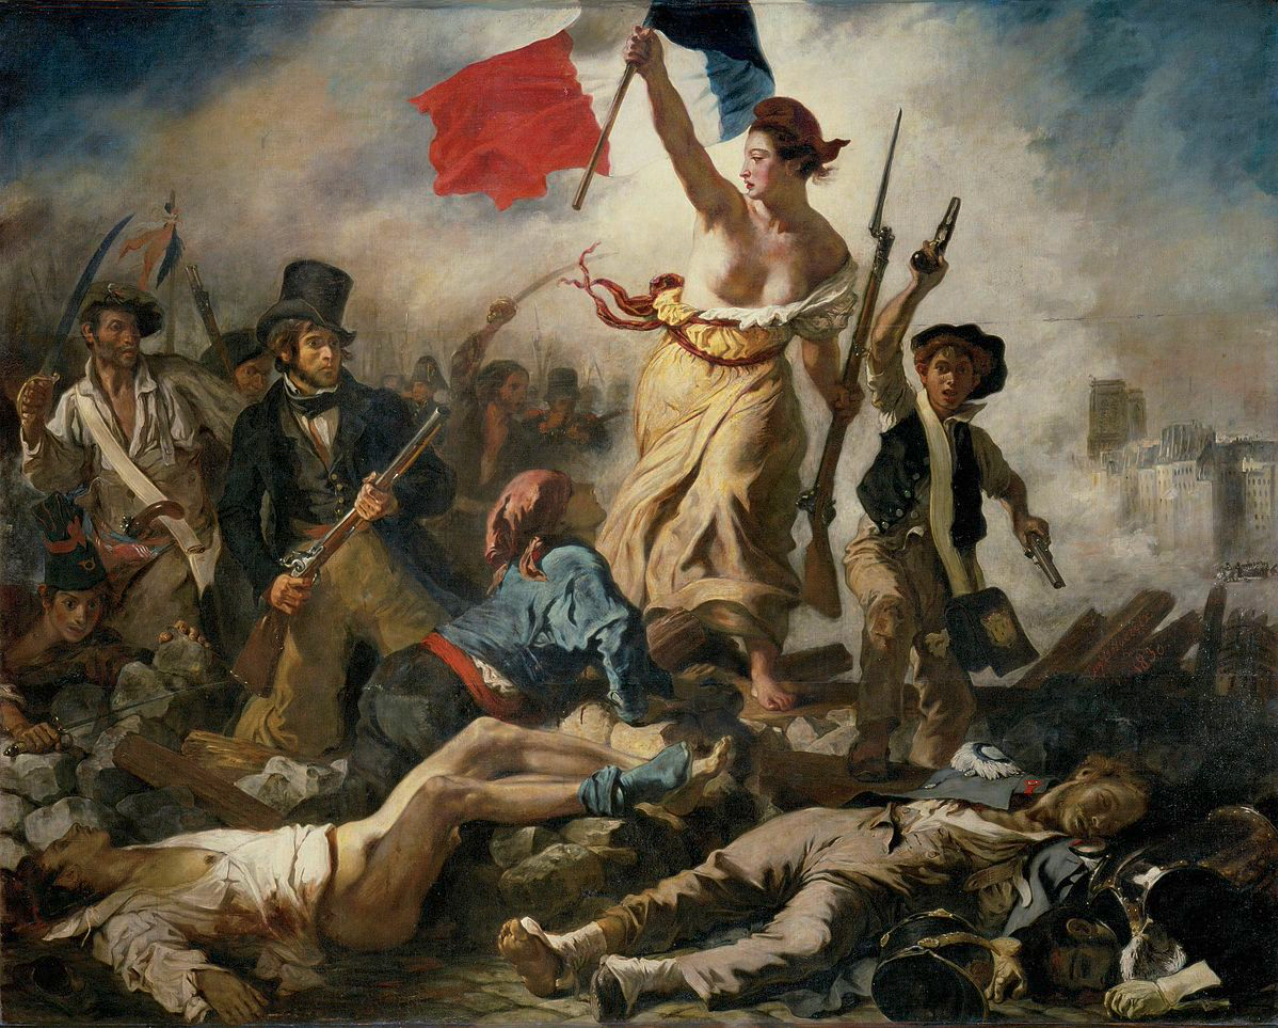 La Liberté guidant le peuple - Eugène Delacroix - 1830. Crédit: Capture d'écran.